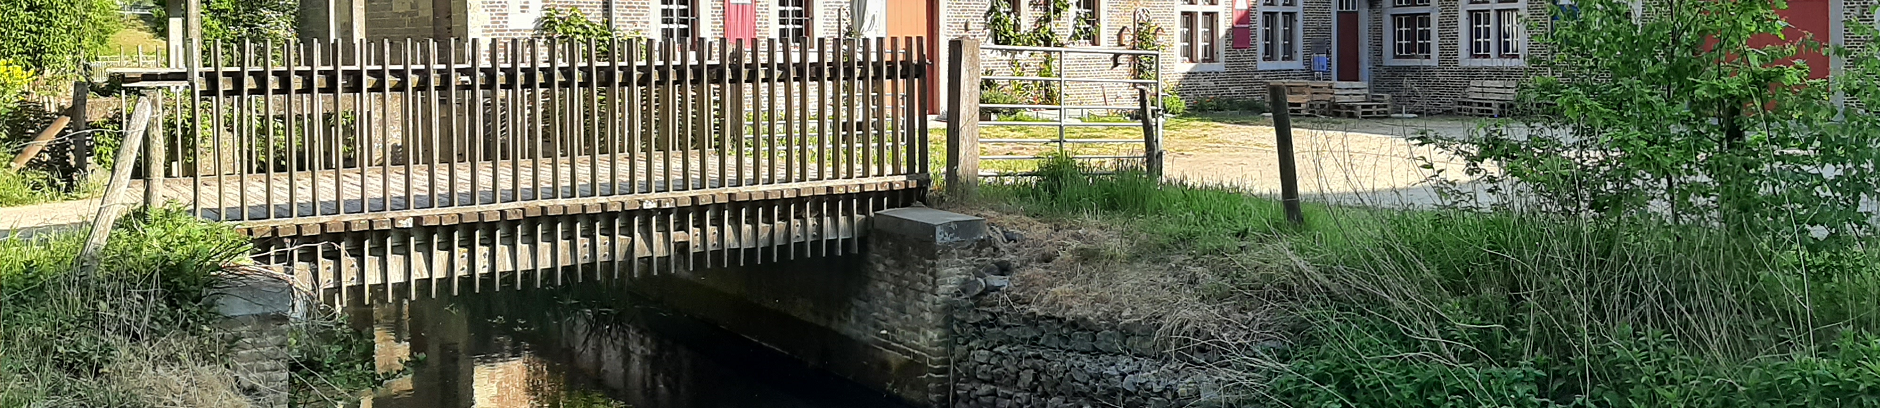 Een kleine brug op een rivier, Hasselt